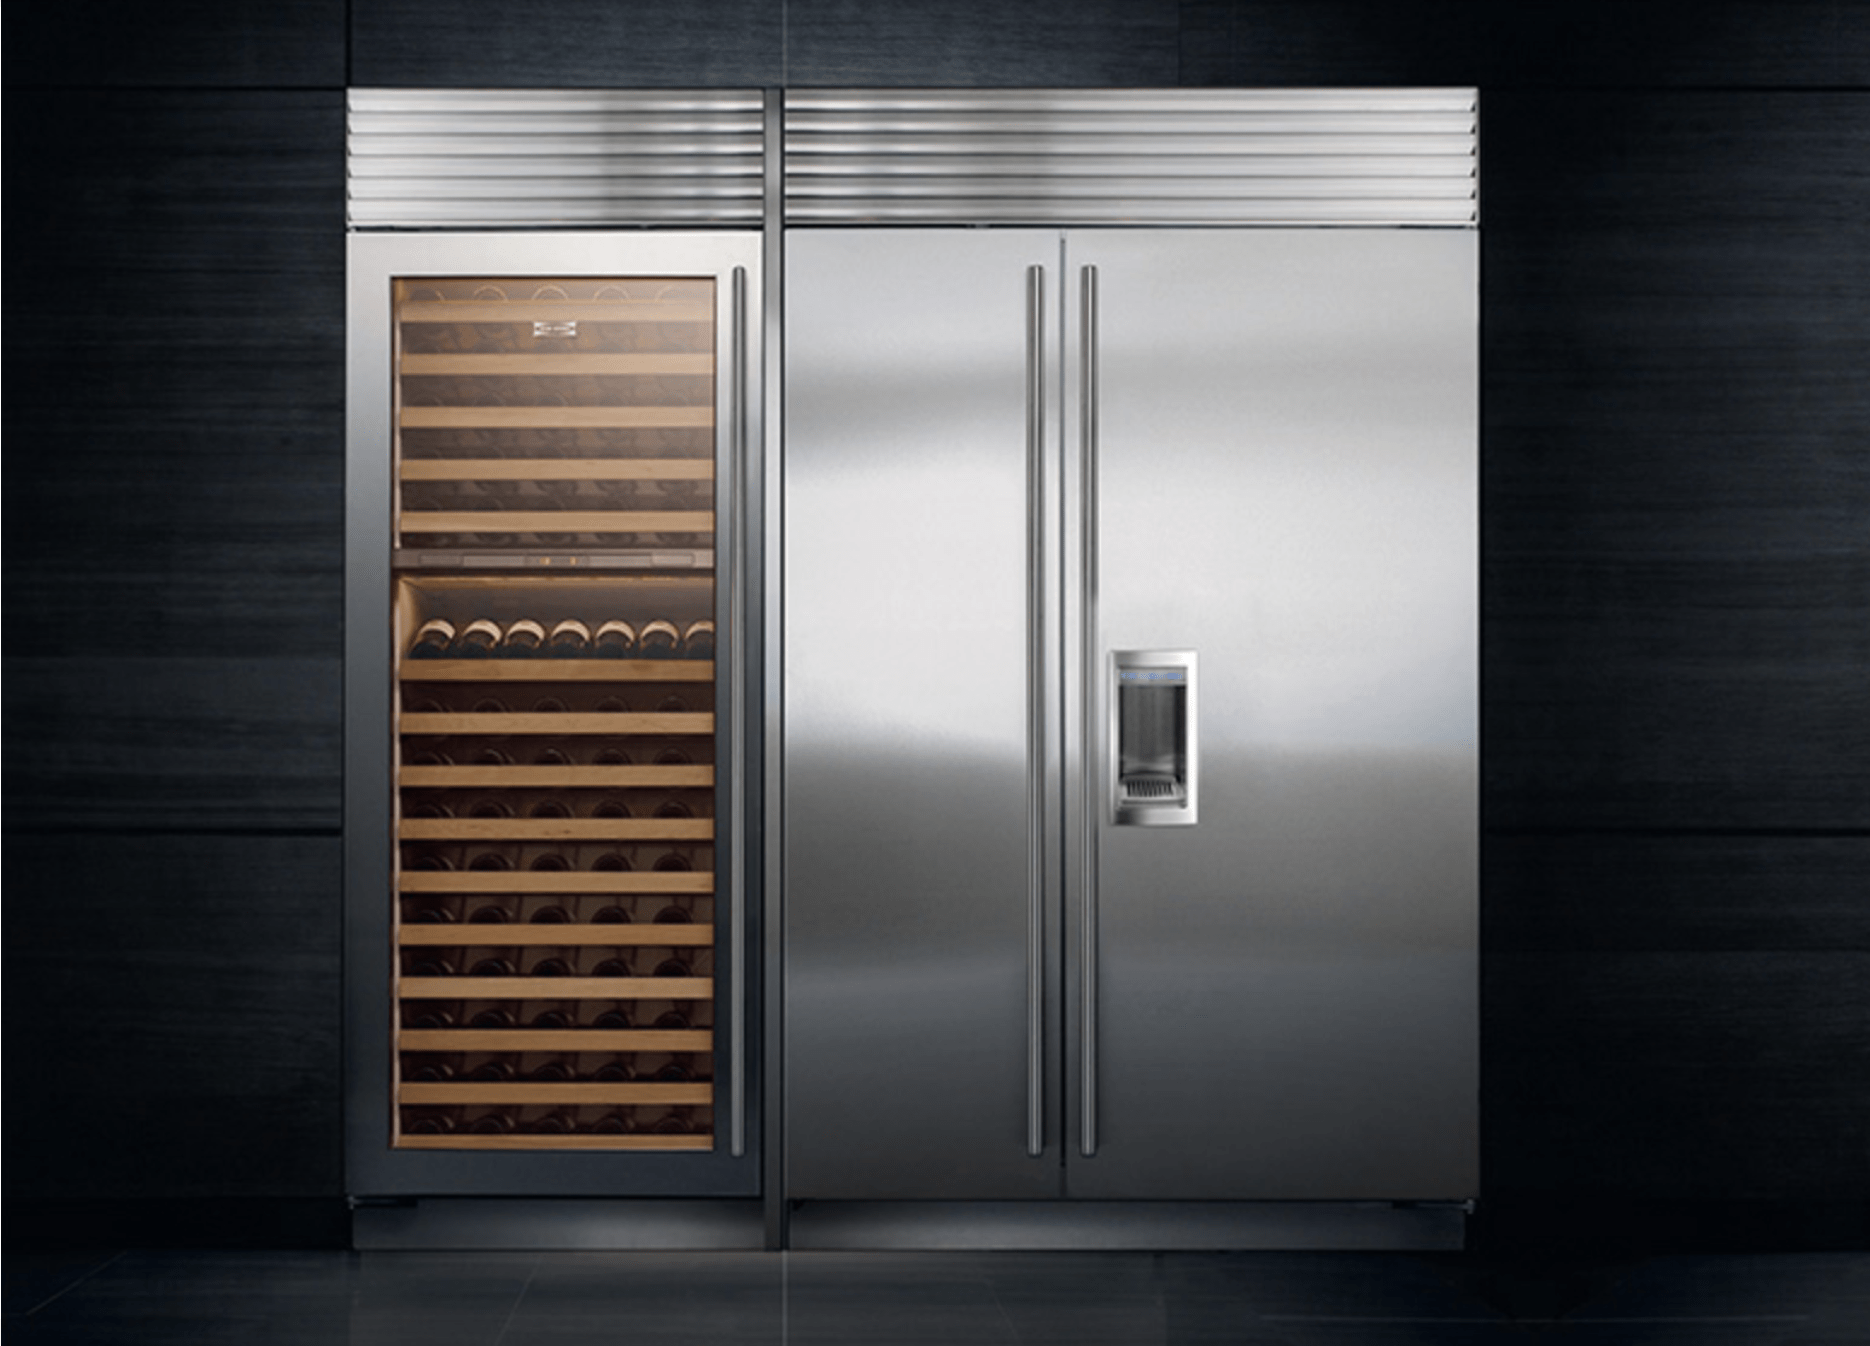 Sub-Zero-Refrigerator-with-Wine-Storage